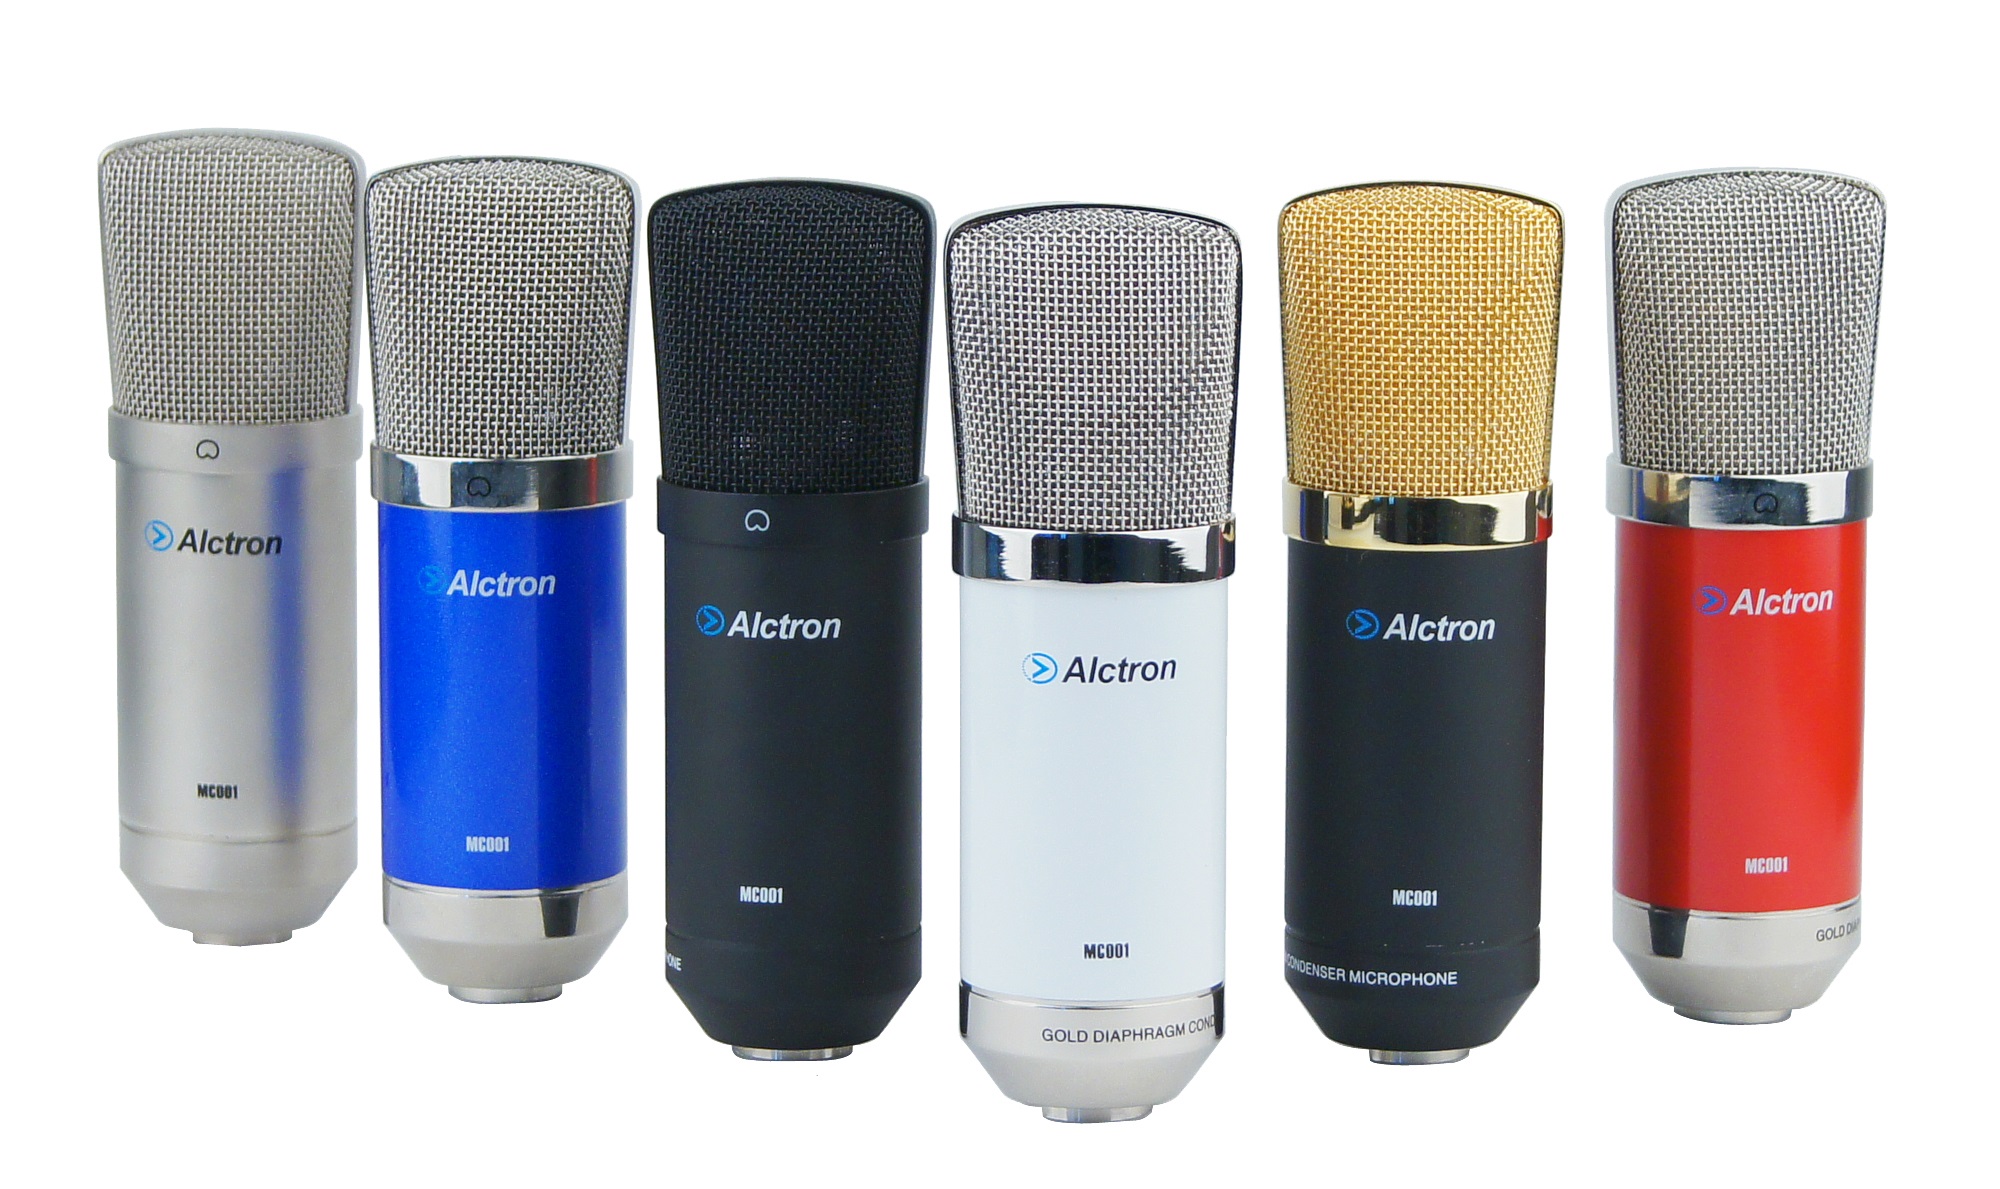 میکروفون Alctron MC001 | خرید میکروفون استودیویی الکترون | خرید میکروفون استودیویی | خرید تجهیزات استودیویی | میکروفون استودیویی کارکرده | Alctron MC001